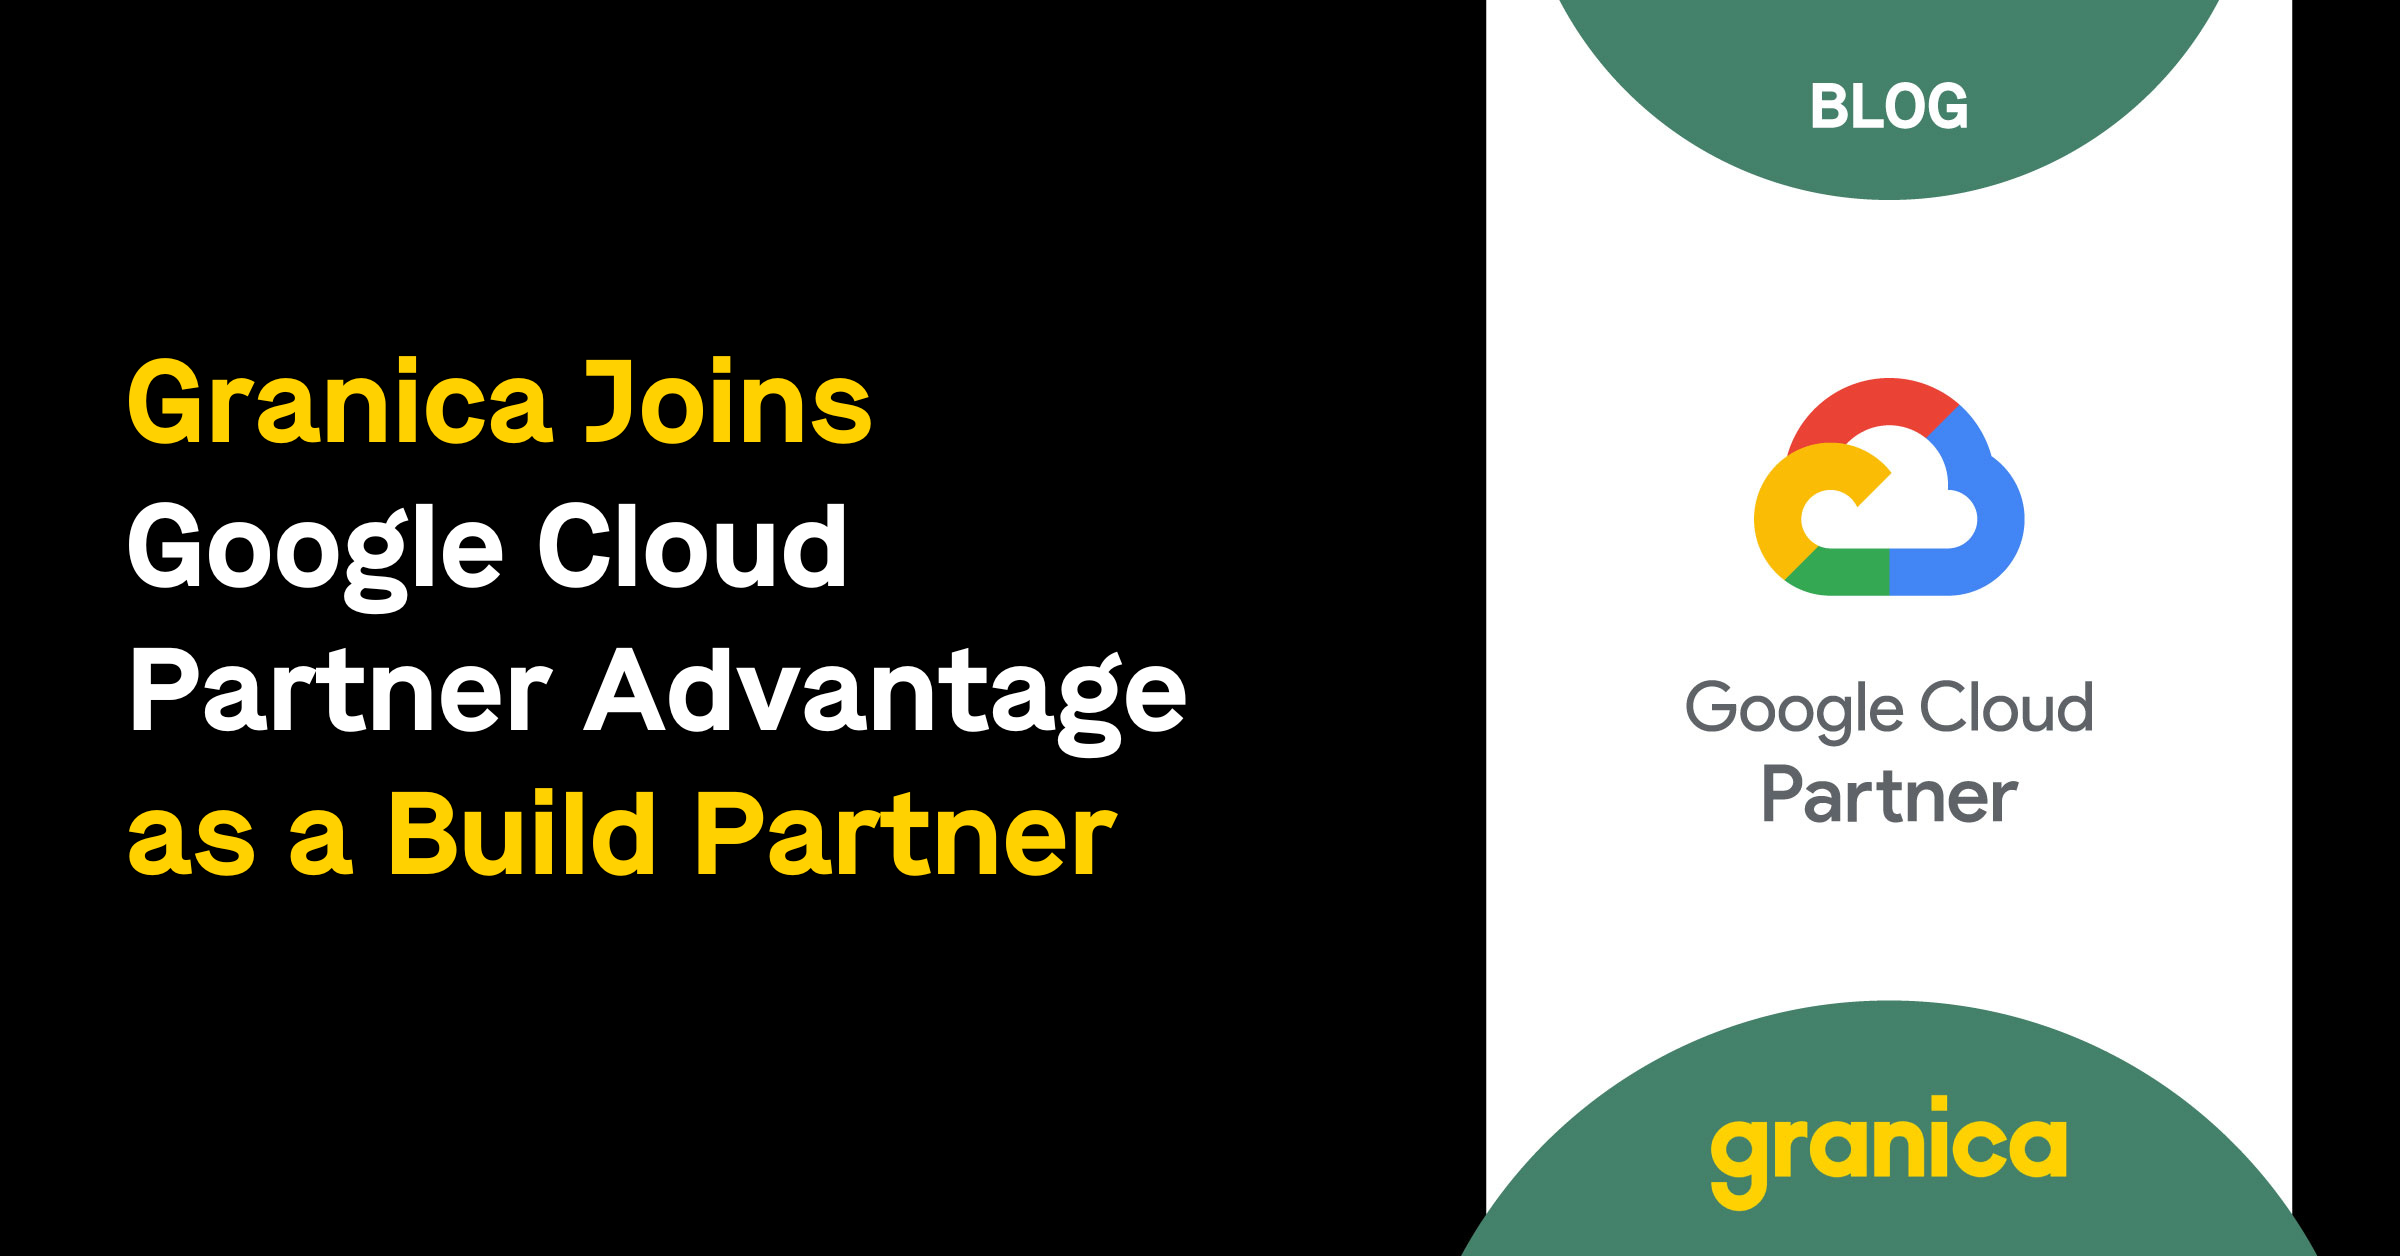 Granica joins Google Cloud Partner Advantage as a Build Partner